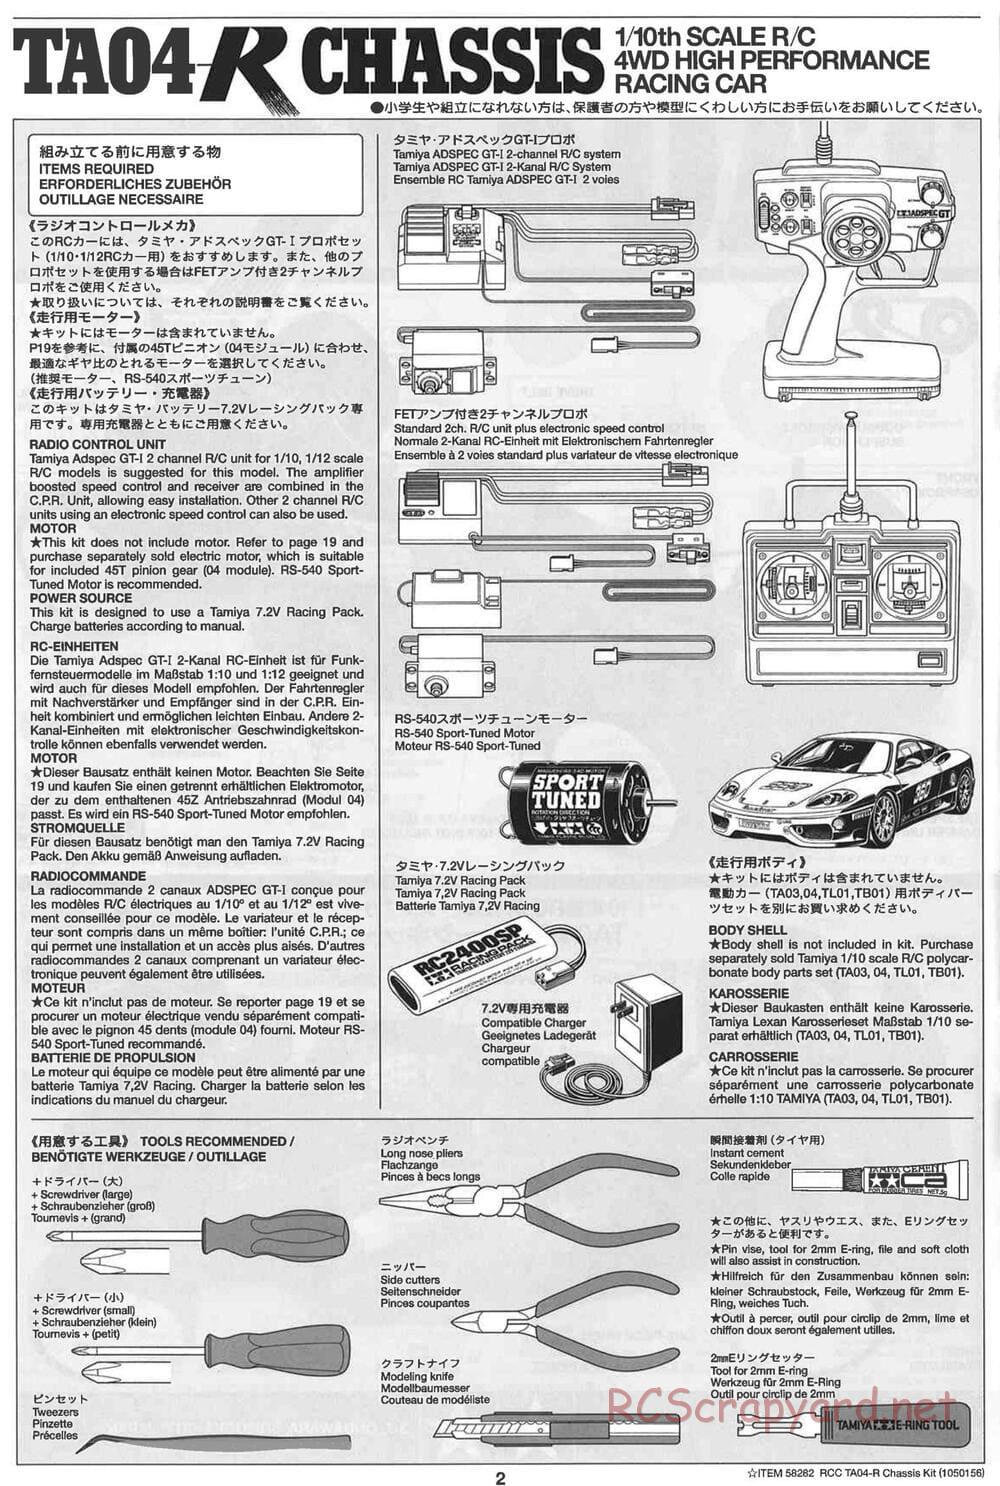 Tamiya - TA-04R Chassis - Manual - Page 2